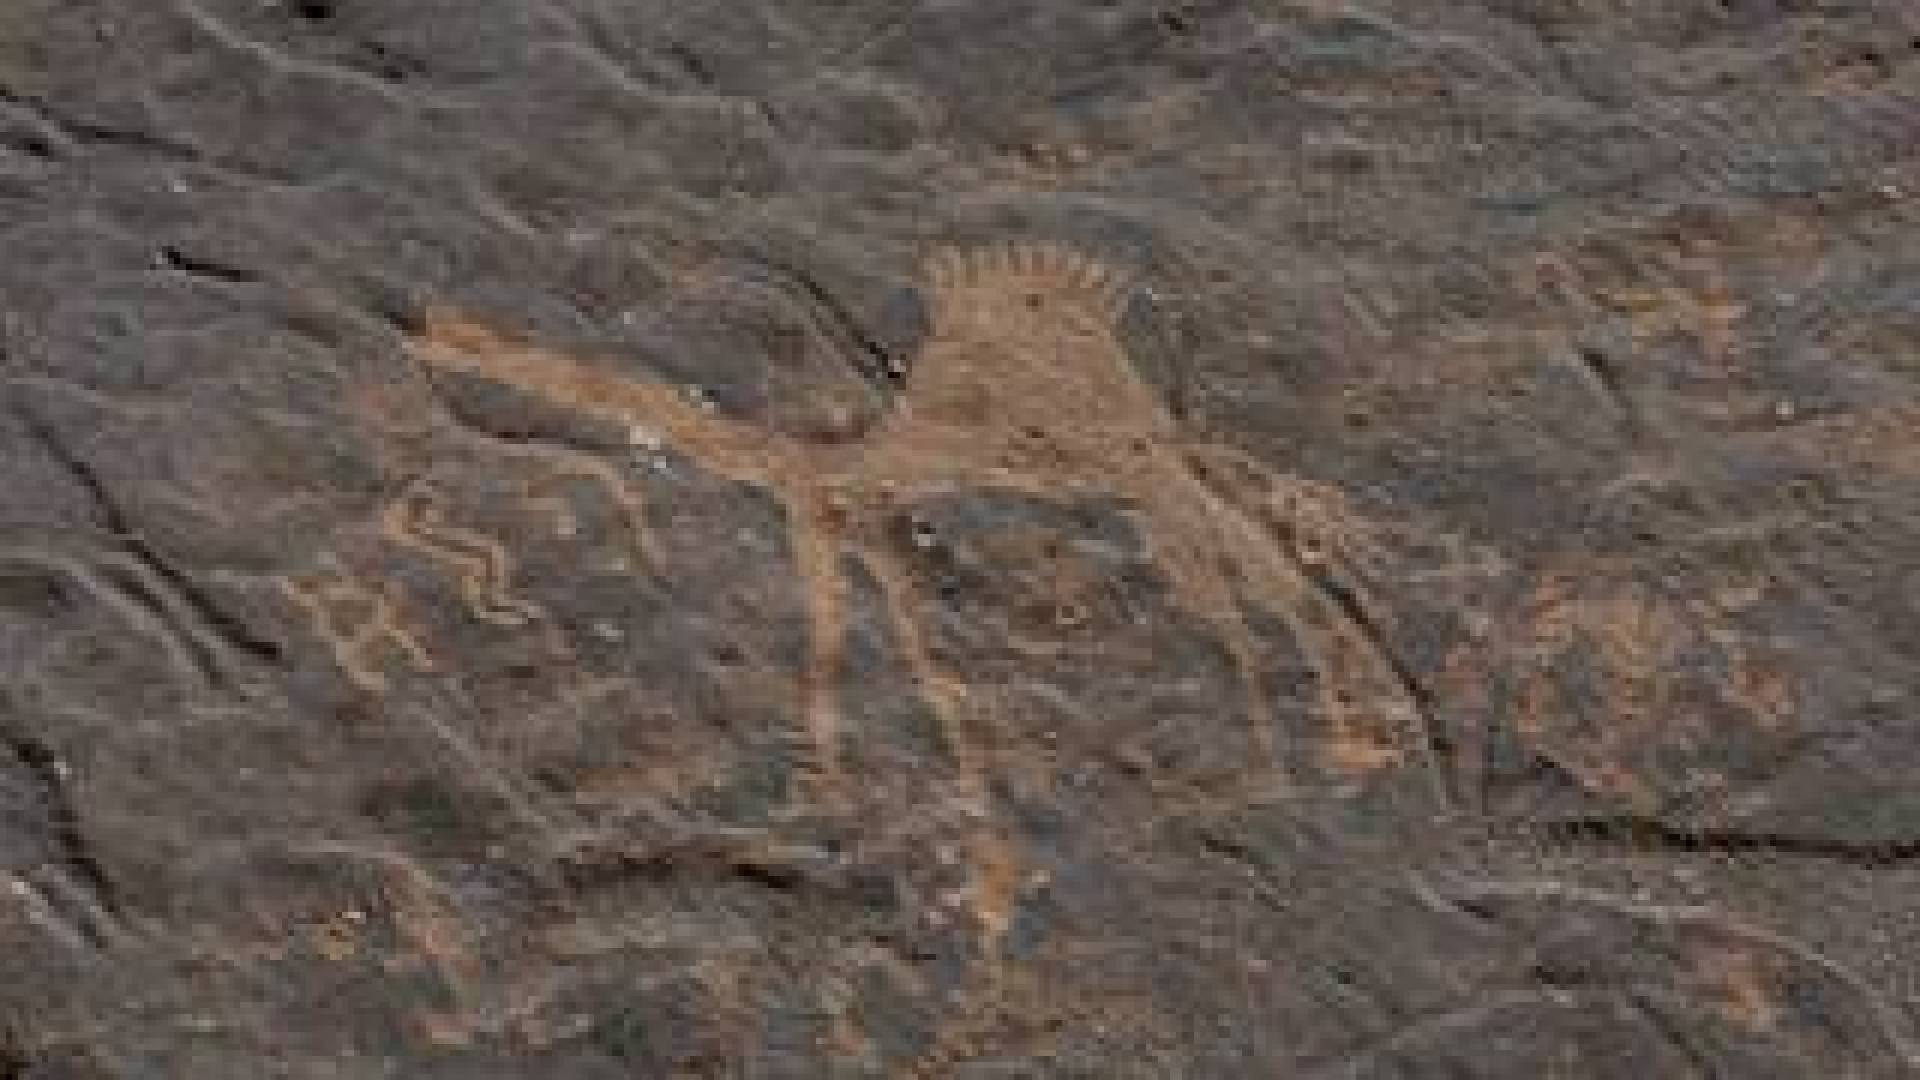 اكتشاف منحوتات الإبل الحجرية بالحجم الطبيعي في صحراء السعودية